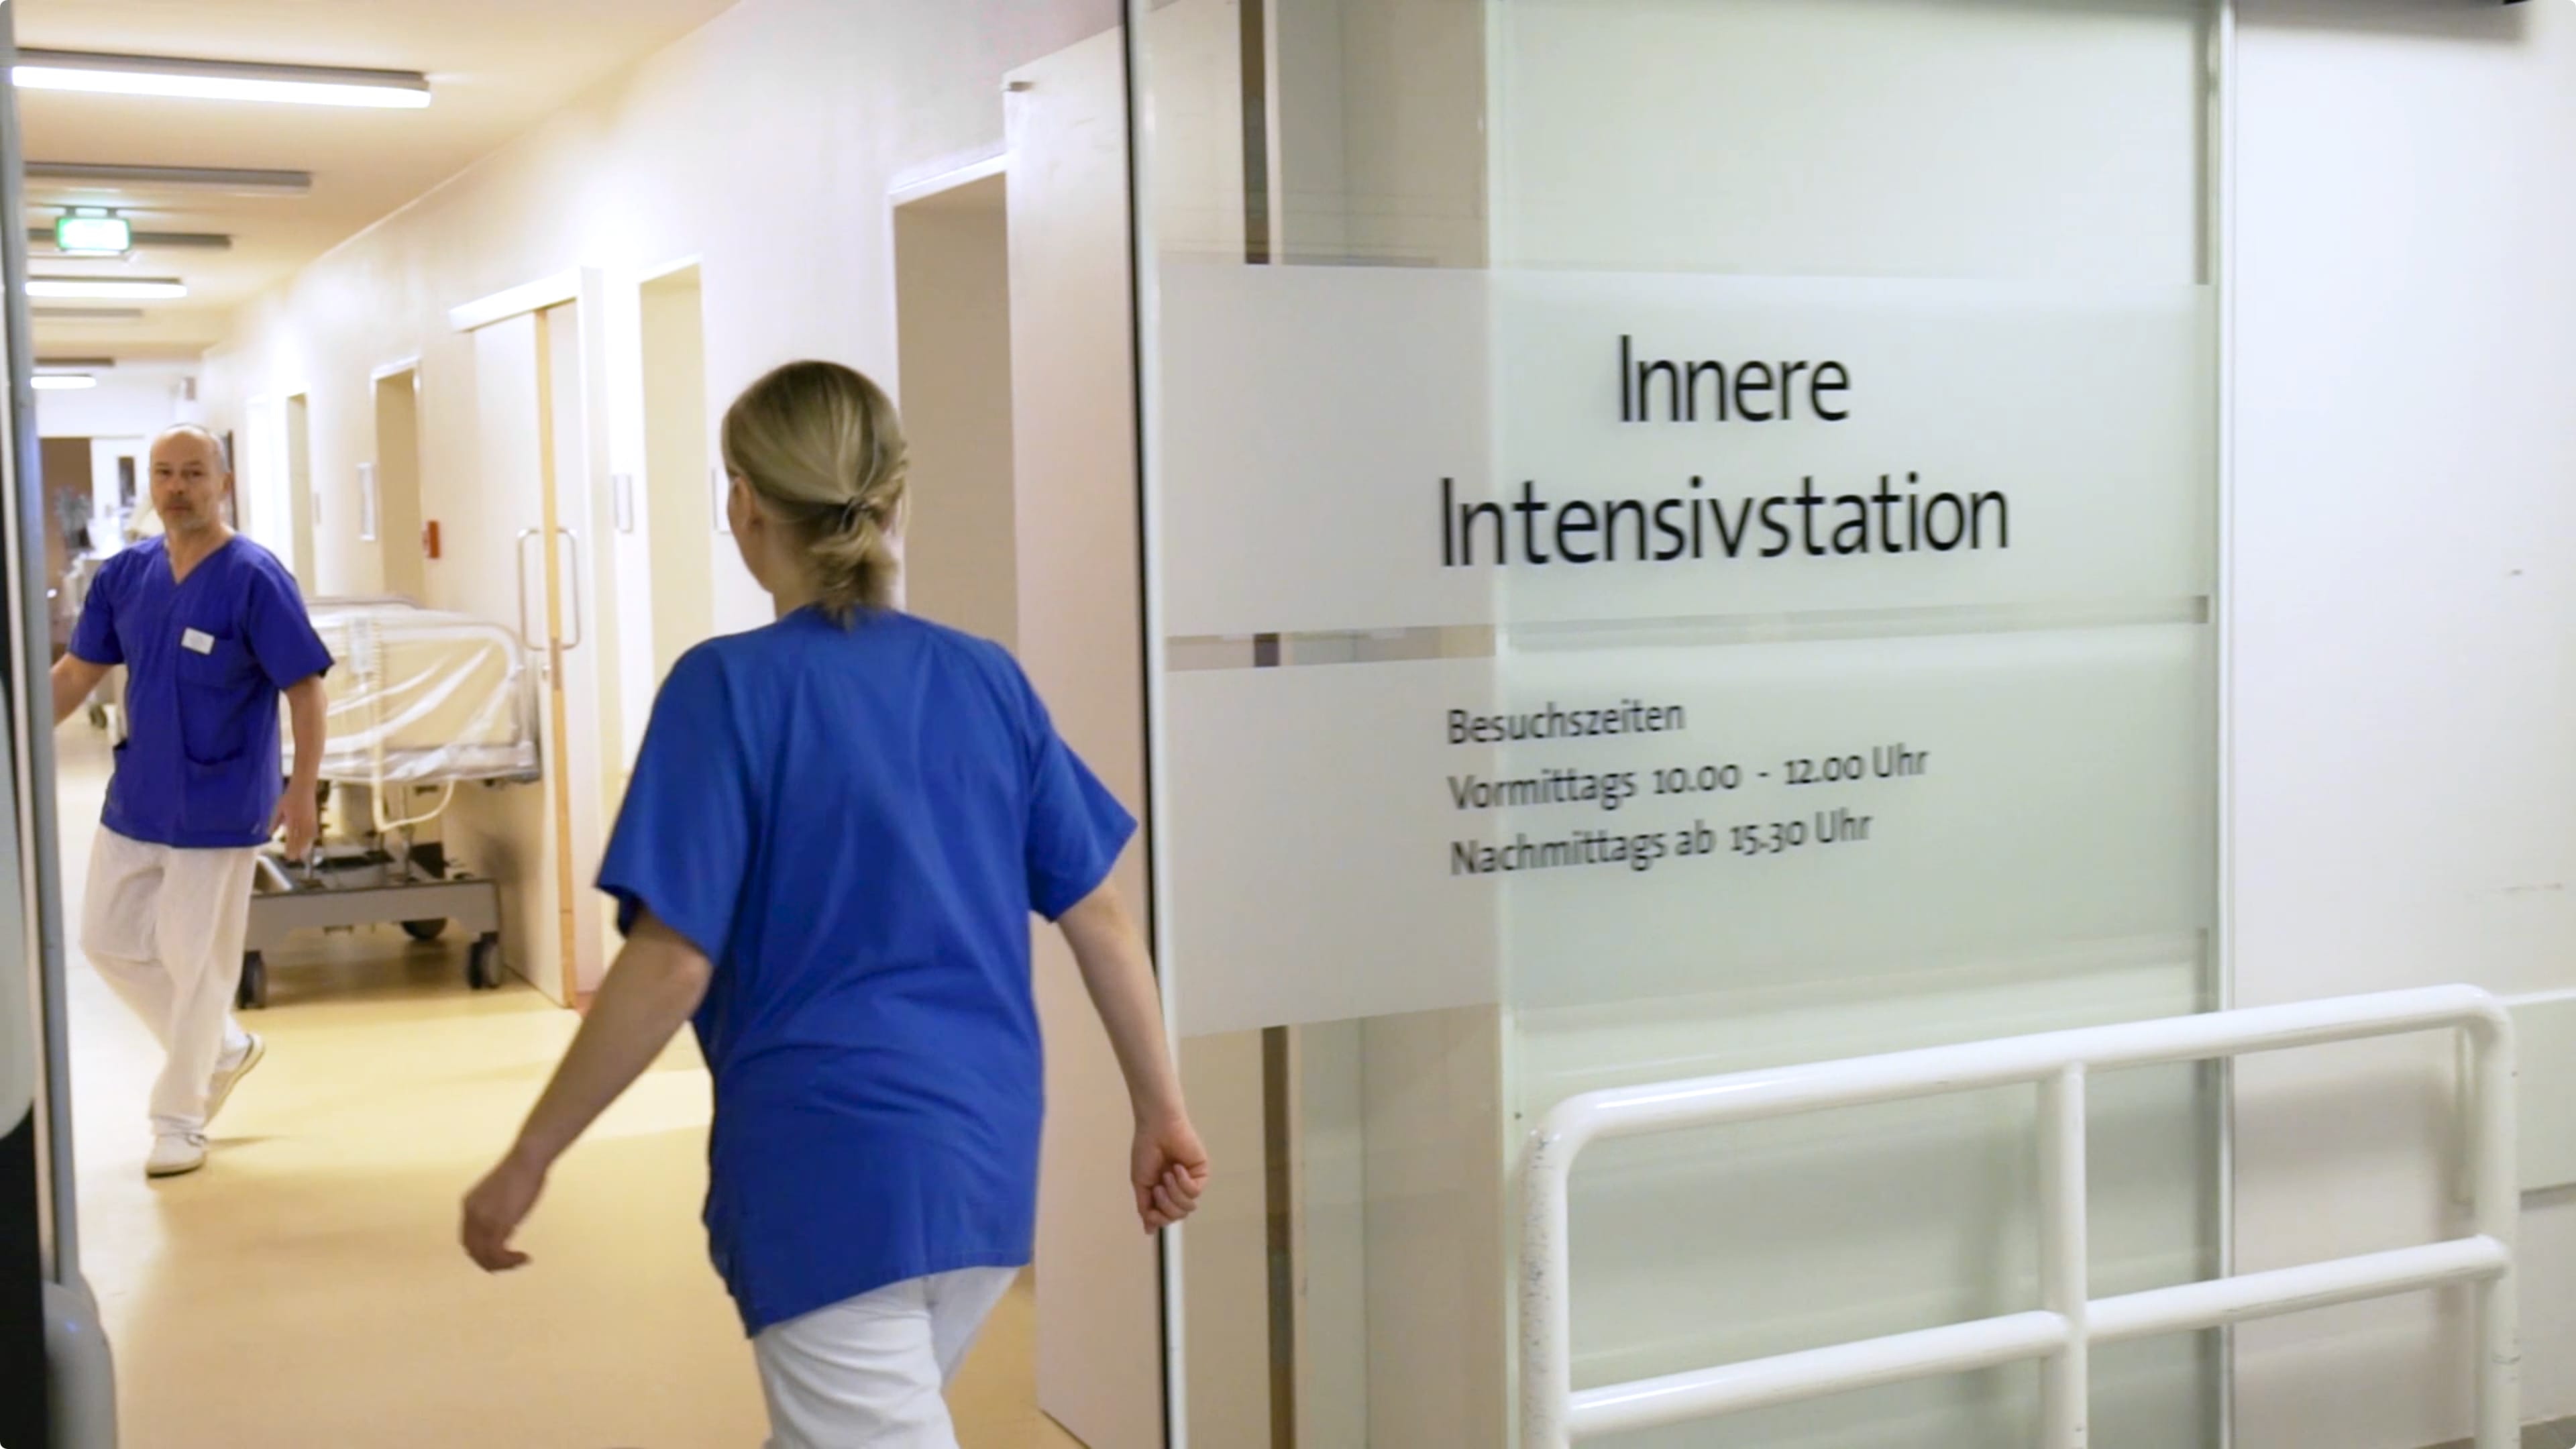 Eine Krankenschwester geht auf die Innere Intensivstation